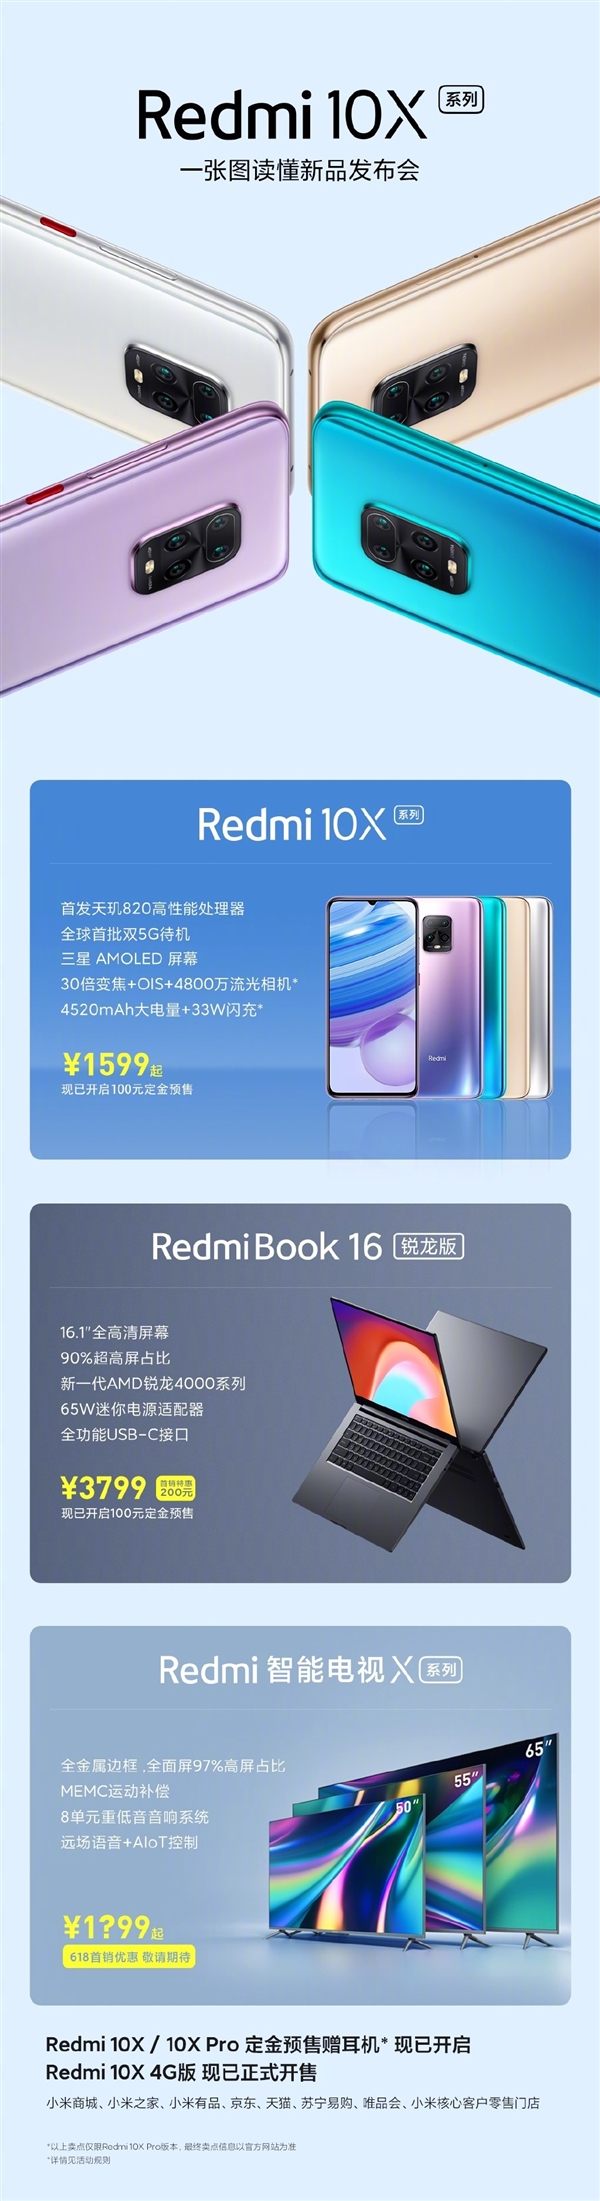 一图看懂Redmi新品发布会所有新产品：手机上/电视机/笔记本电脑三管齐下、超物超所值